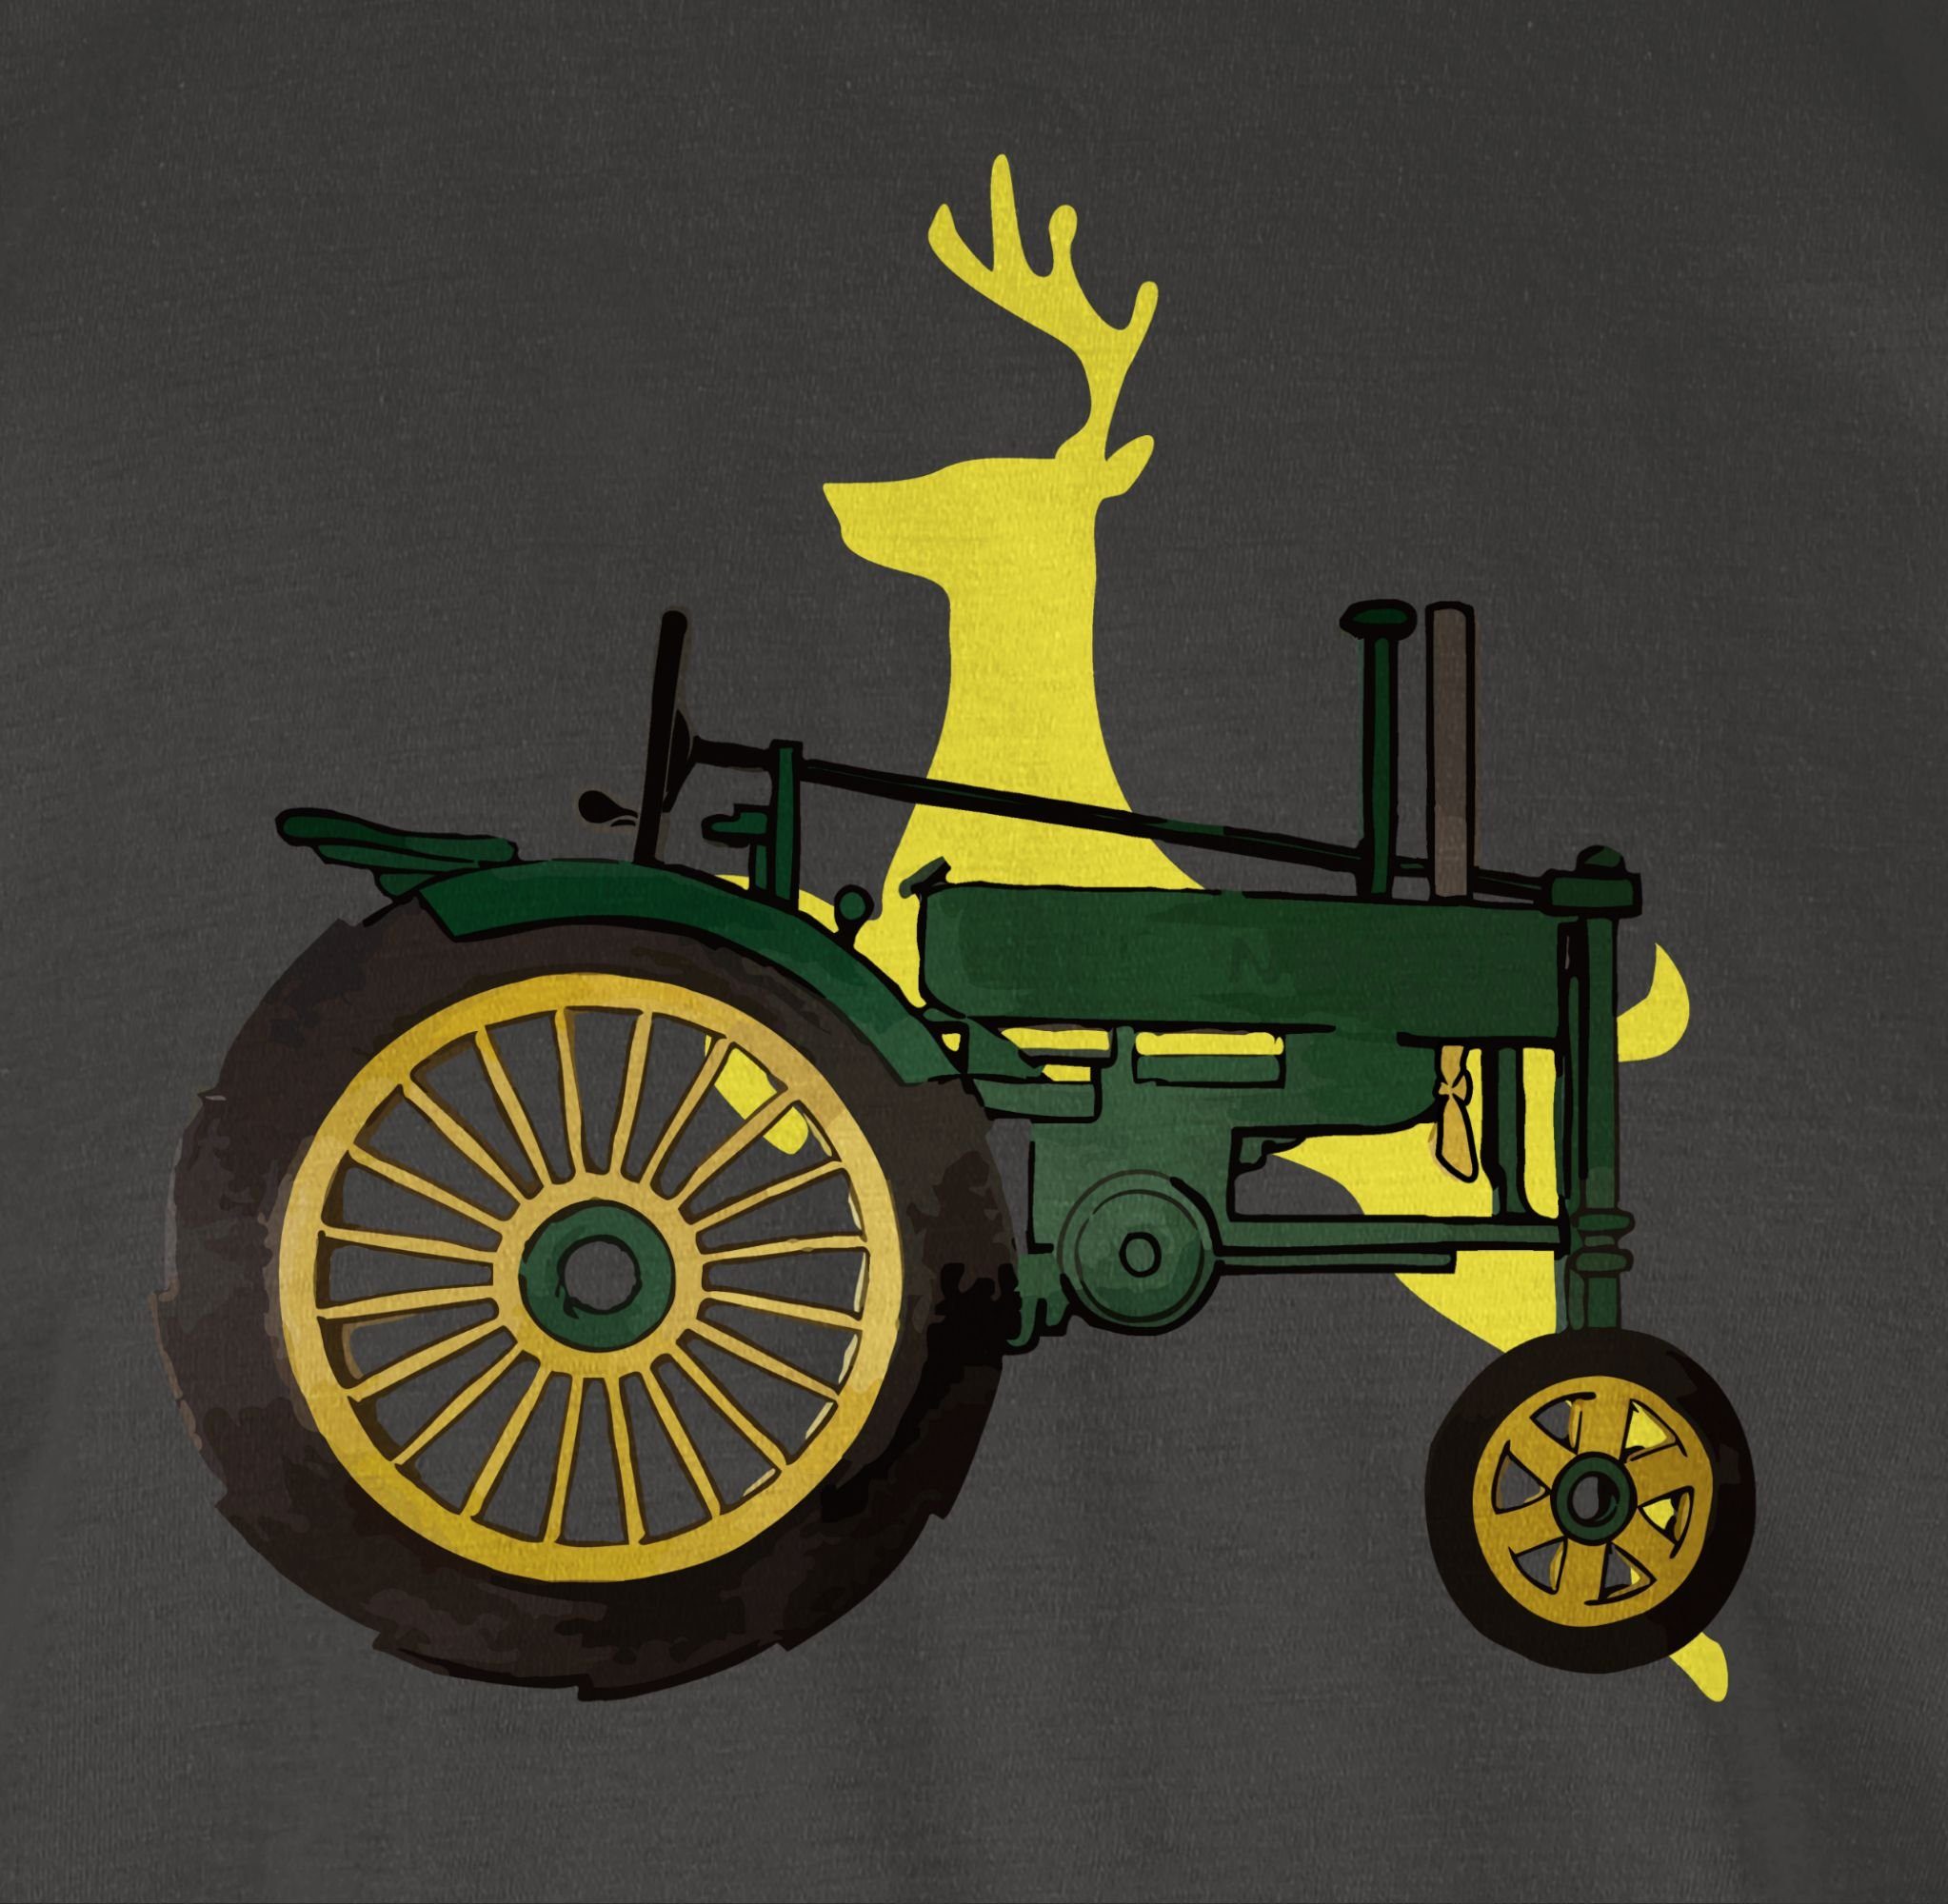 Herren Shirts Shirtracer T-Shirt Traktor Hirsch Deer - Landwirt Geschenk Bauer - Herren Premium T-Shirt Farmer Landwirtschaft